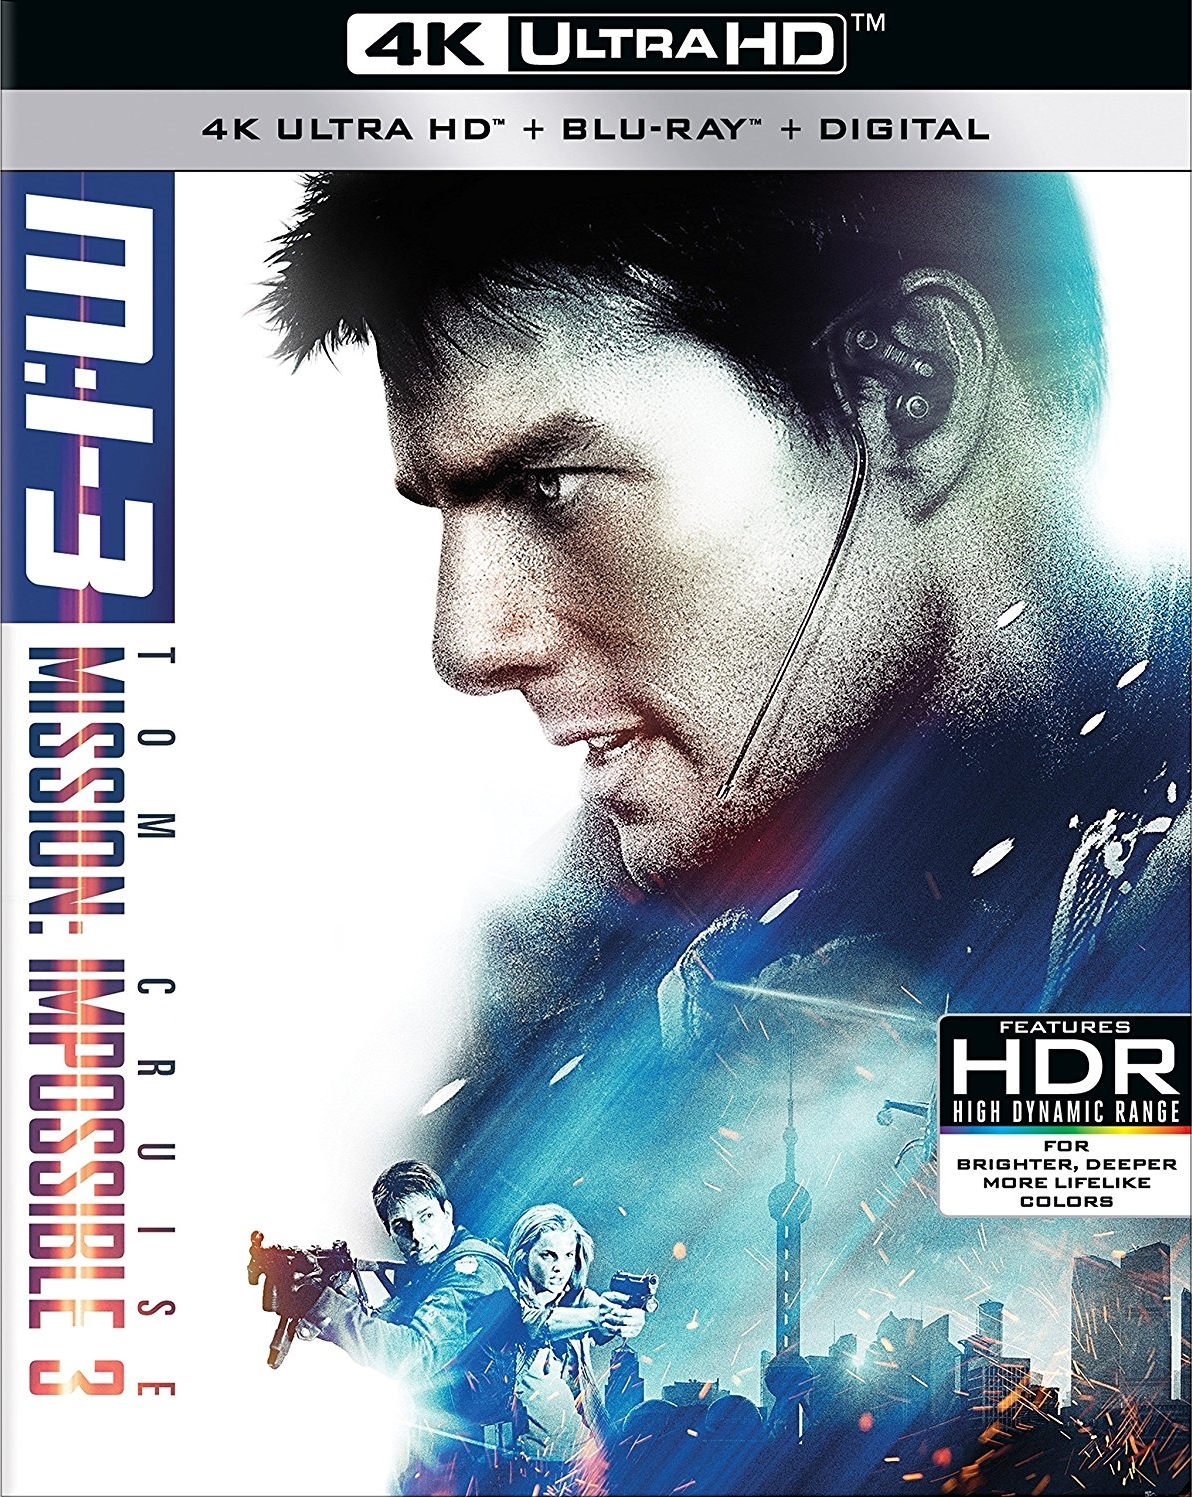 [碟中谍3].Mission.Impossible.III.2006.UHD.BluRay.2160p.HEVC.TrueHD.5.1-TERMiNAL    60.12G-1.jpg